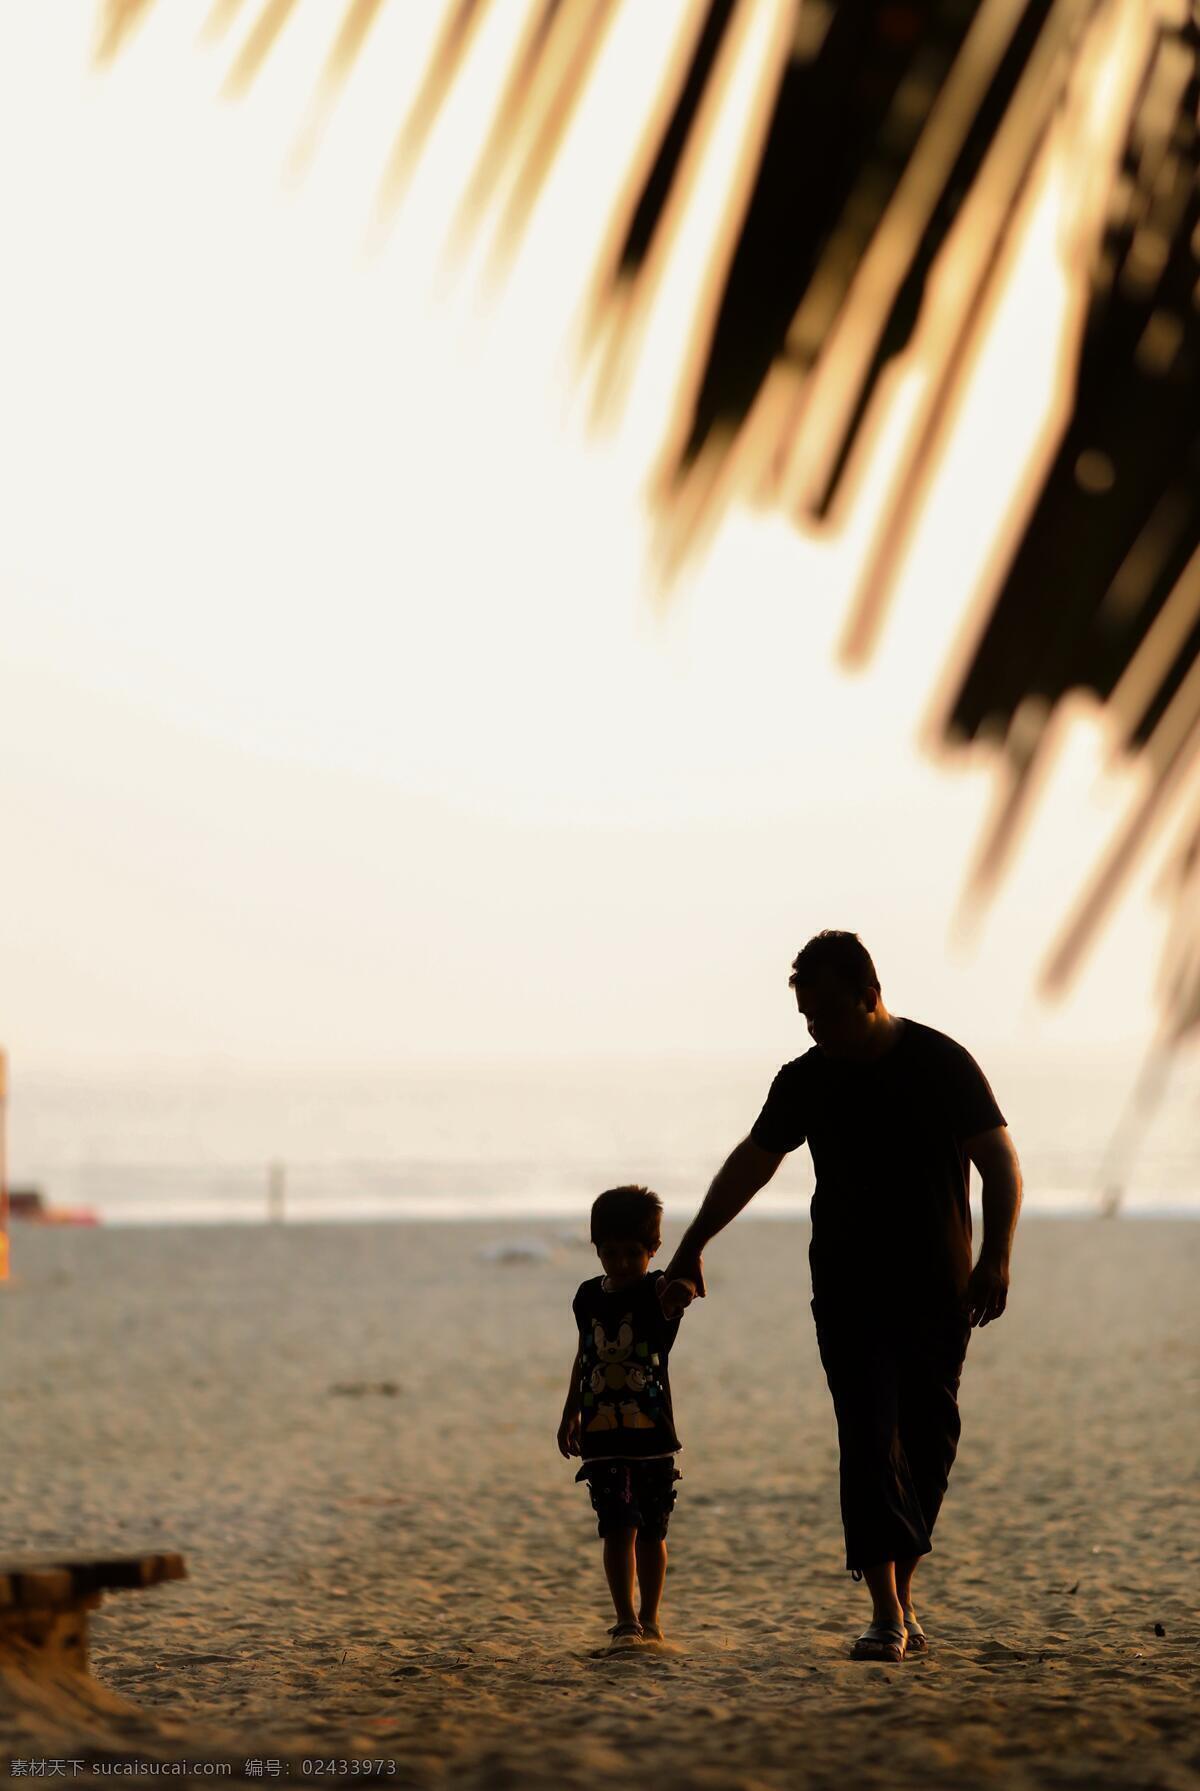 父子剪影 海边 热带 父子 爸爸 儿童 孩子 男孩 沙滩 人物图库 日常生活